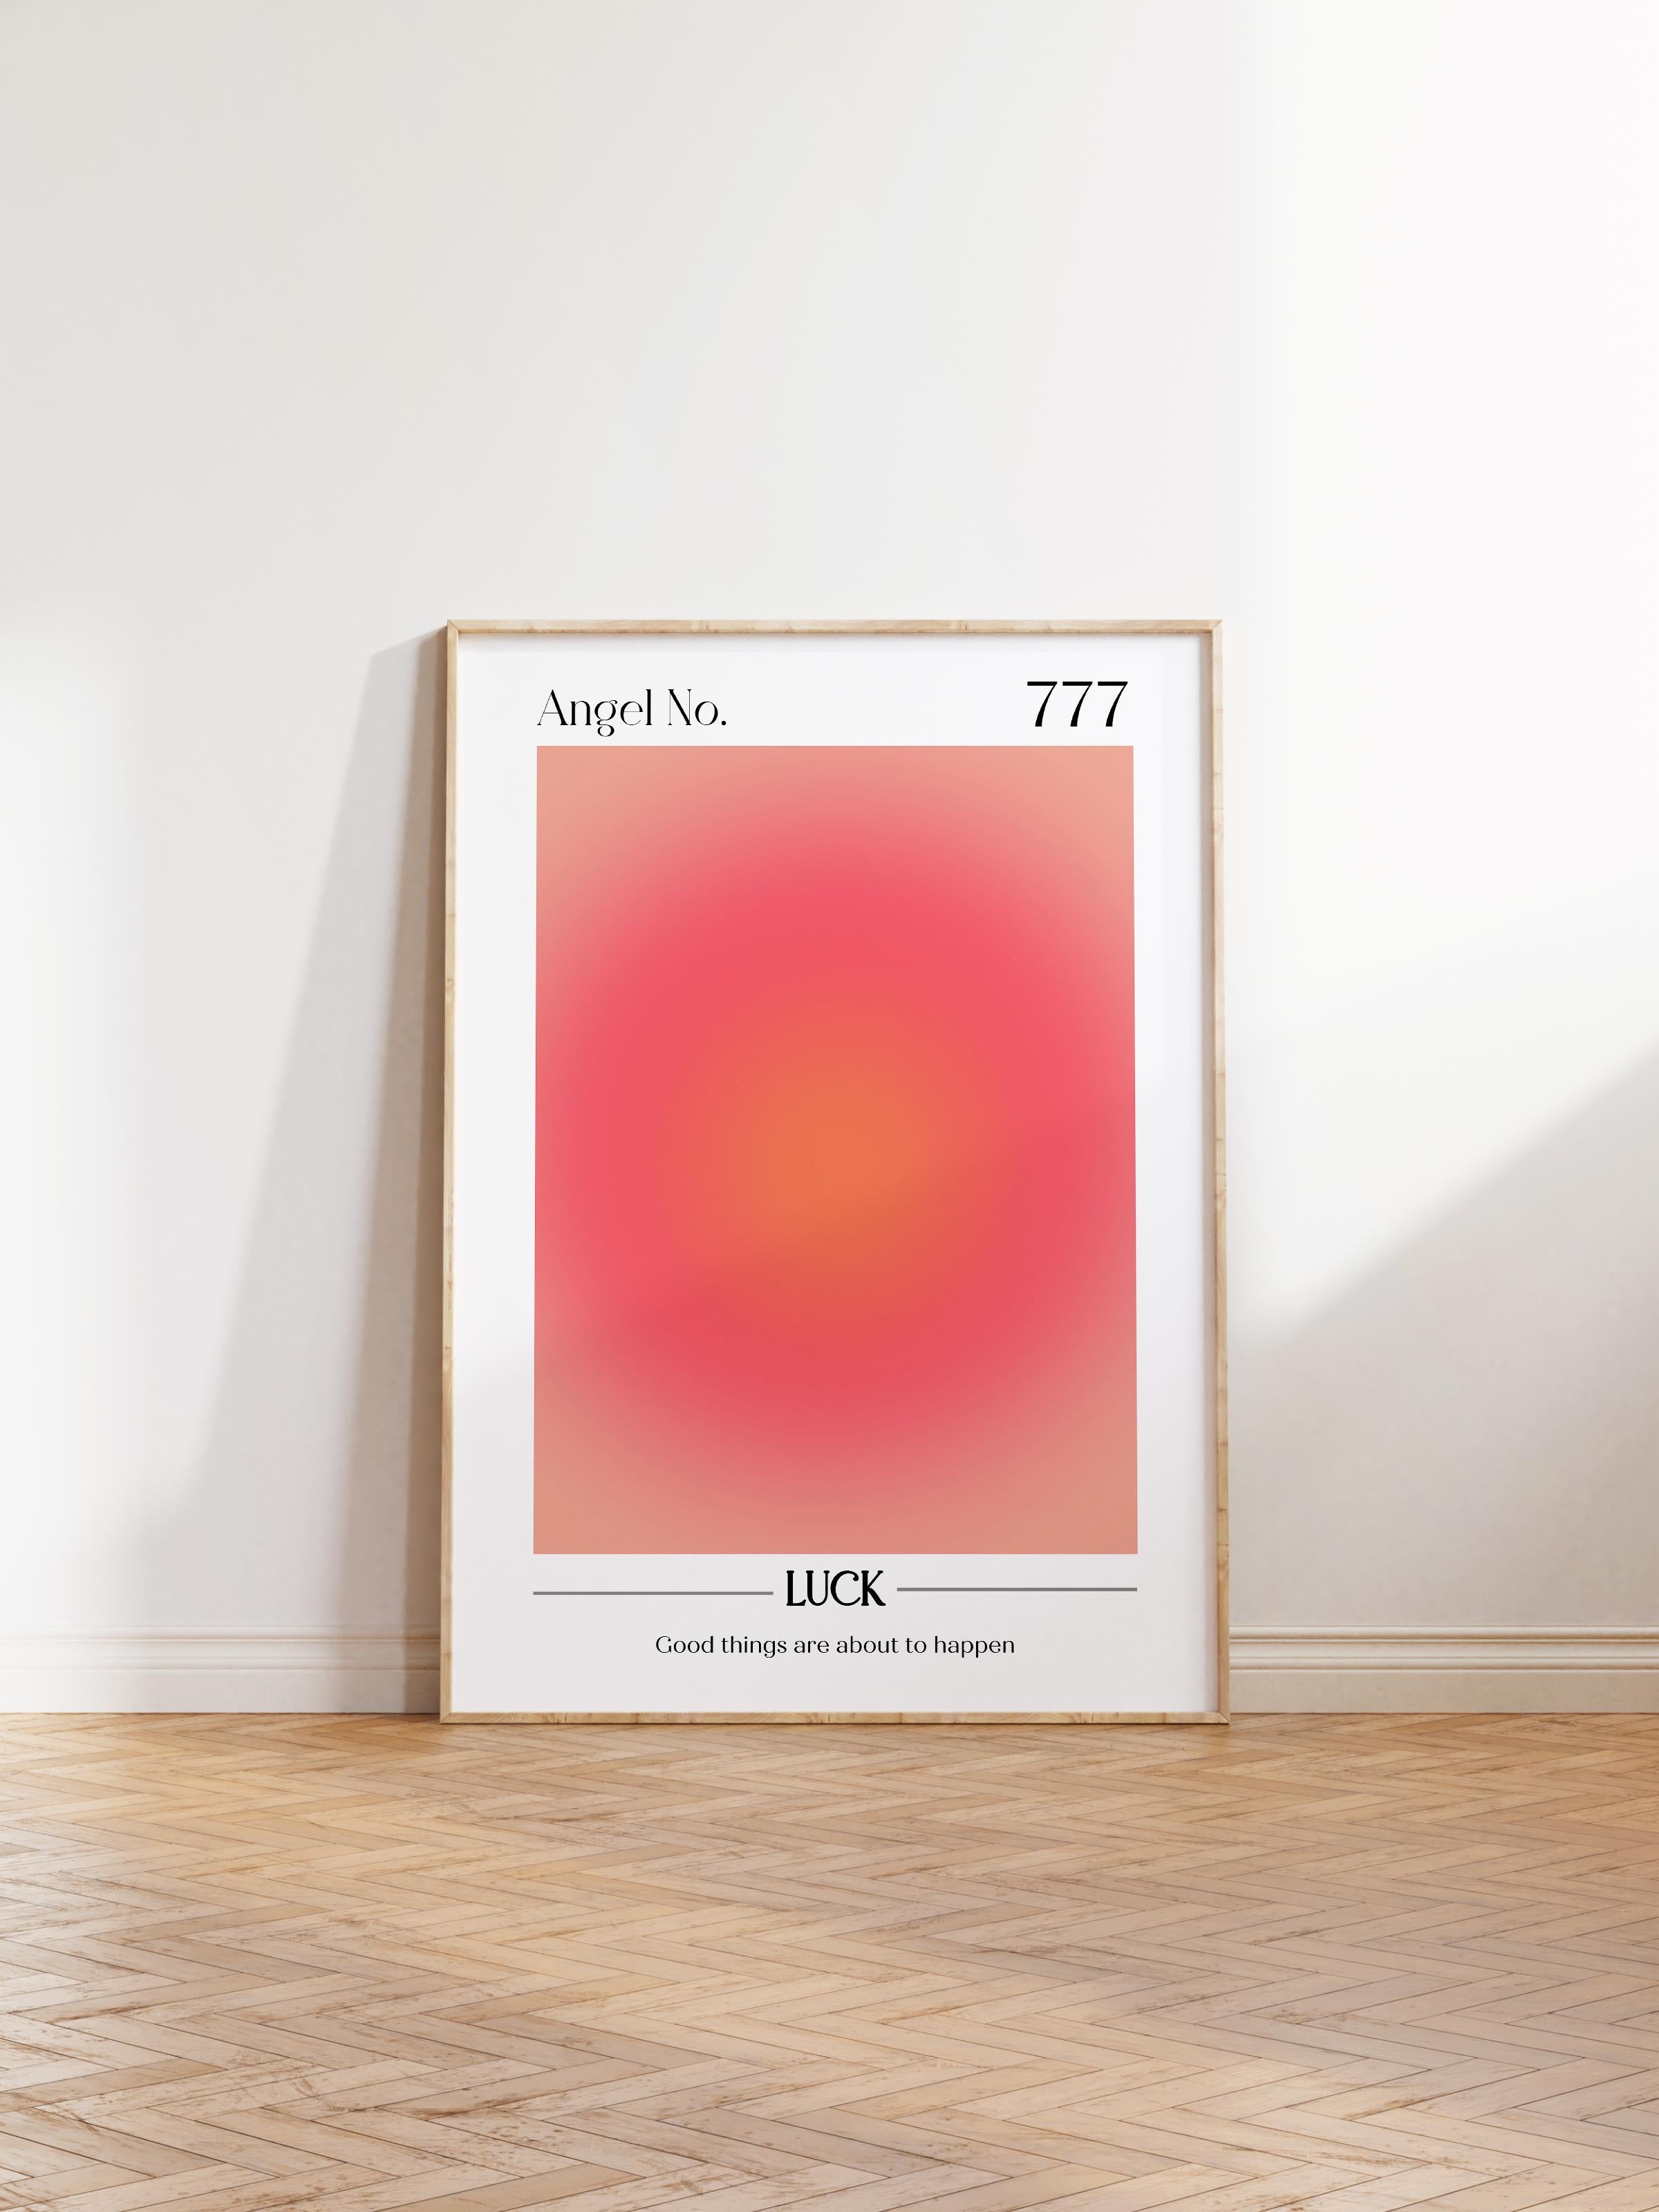 Çerçevesiz Poster, Aura Serisi NO:42 - 777 - Luck Pastel Kırmızı, Melek Numaraları, Renkli Poster